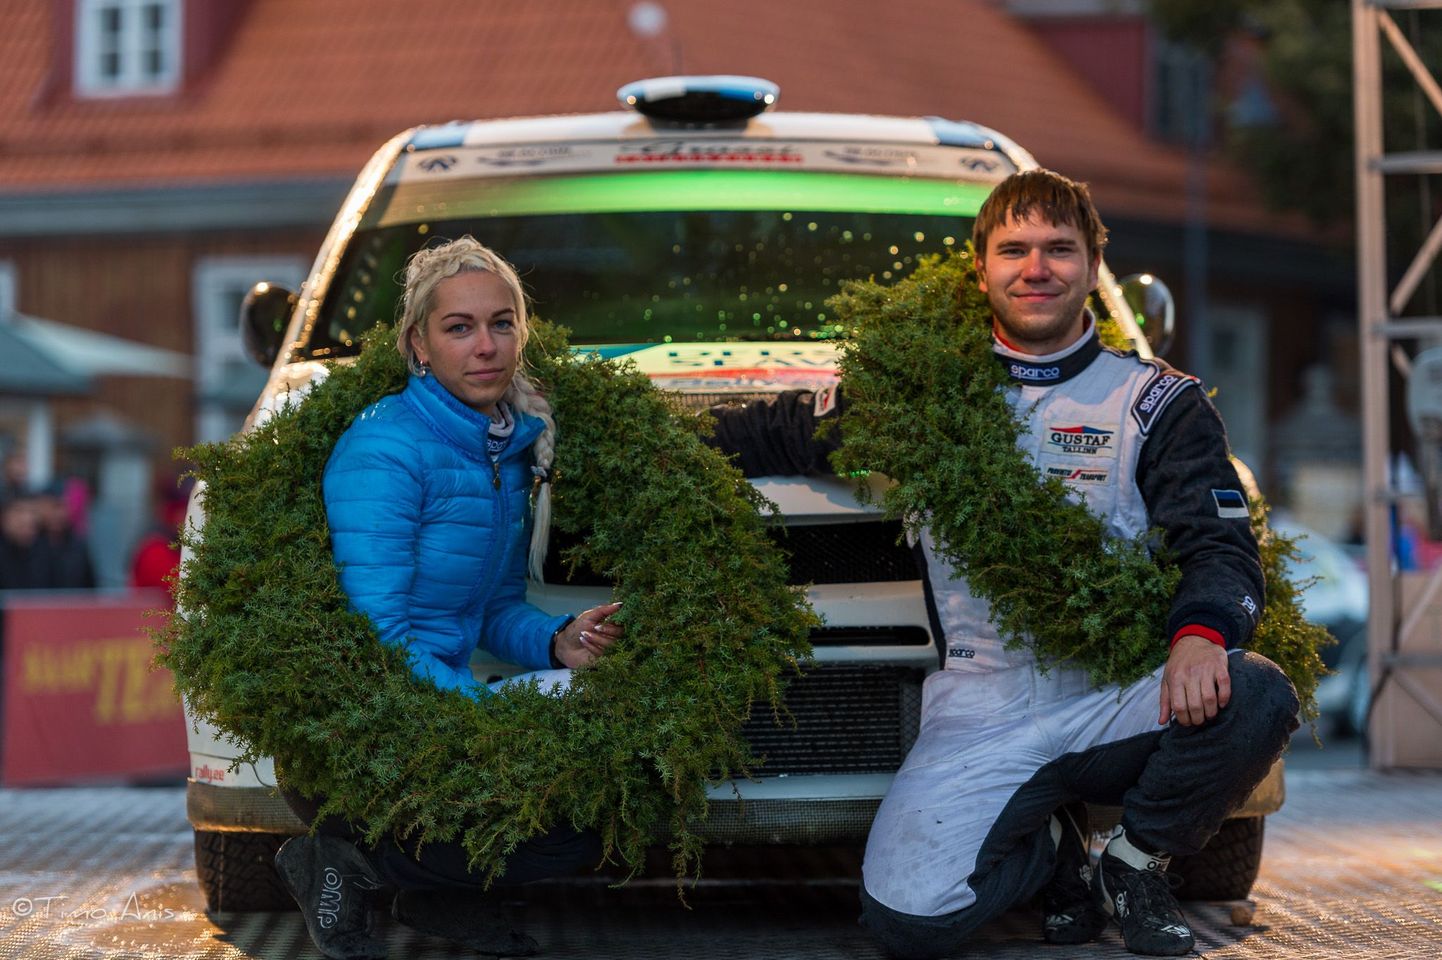 Saaremaa ralli võitjatena finišeerisid hooaja teise rallivõidu võtnud Egon Kaur ja Annika Arnek (Mitsubishi Lancer Evo IX).